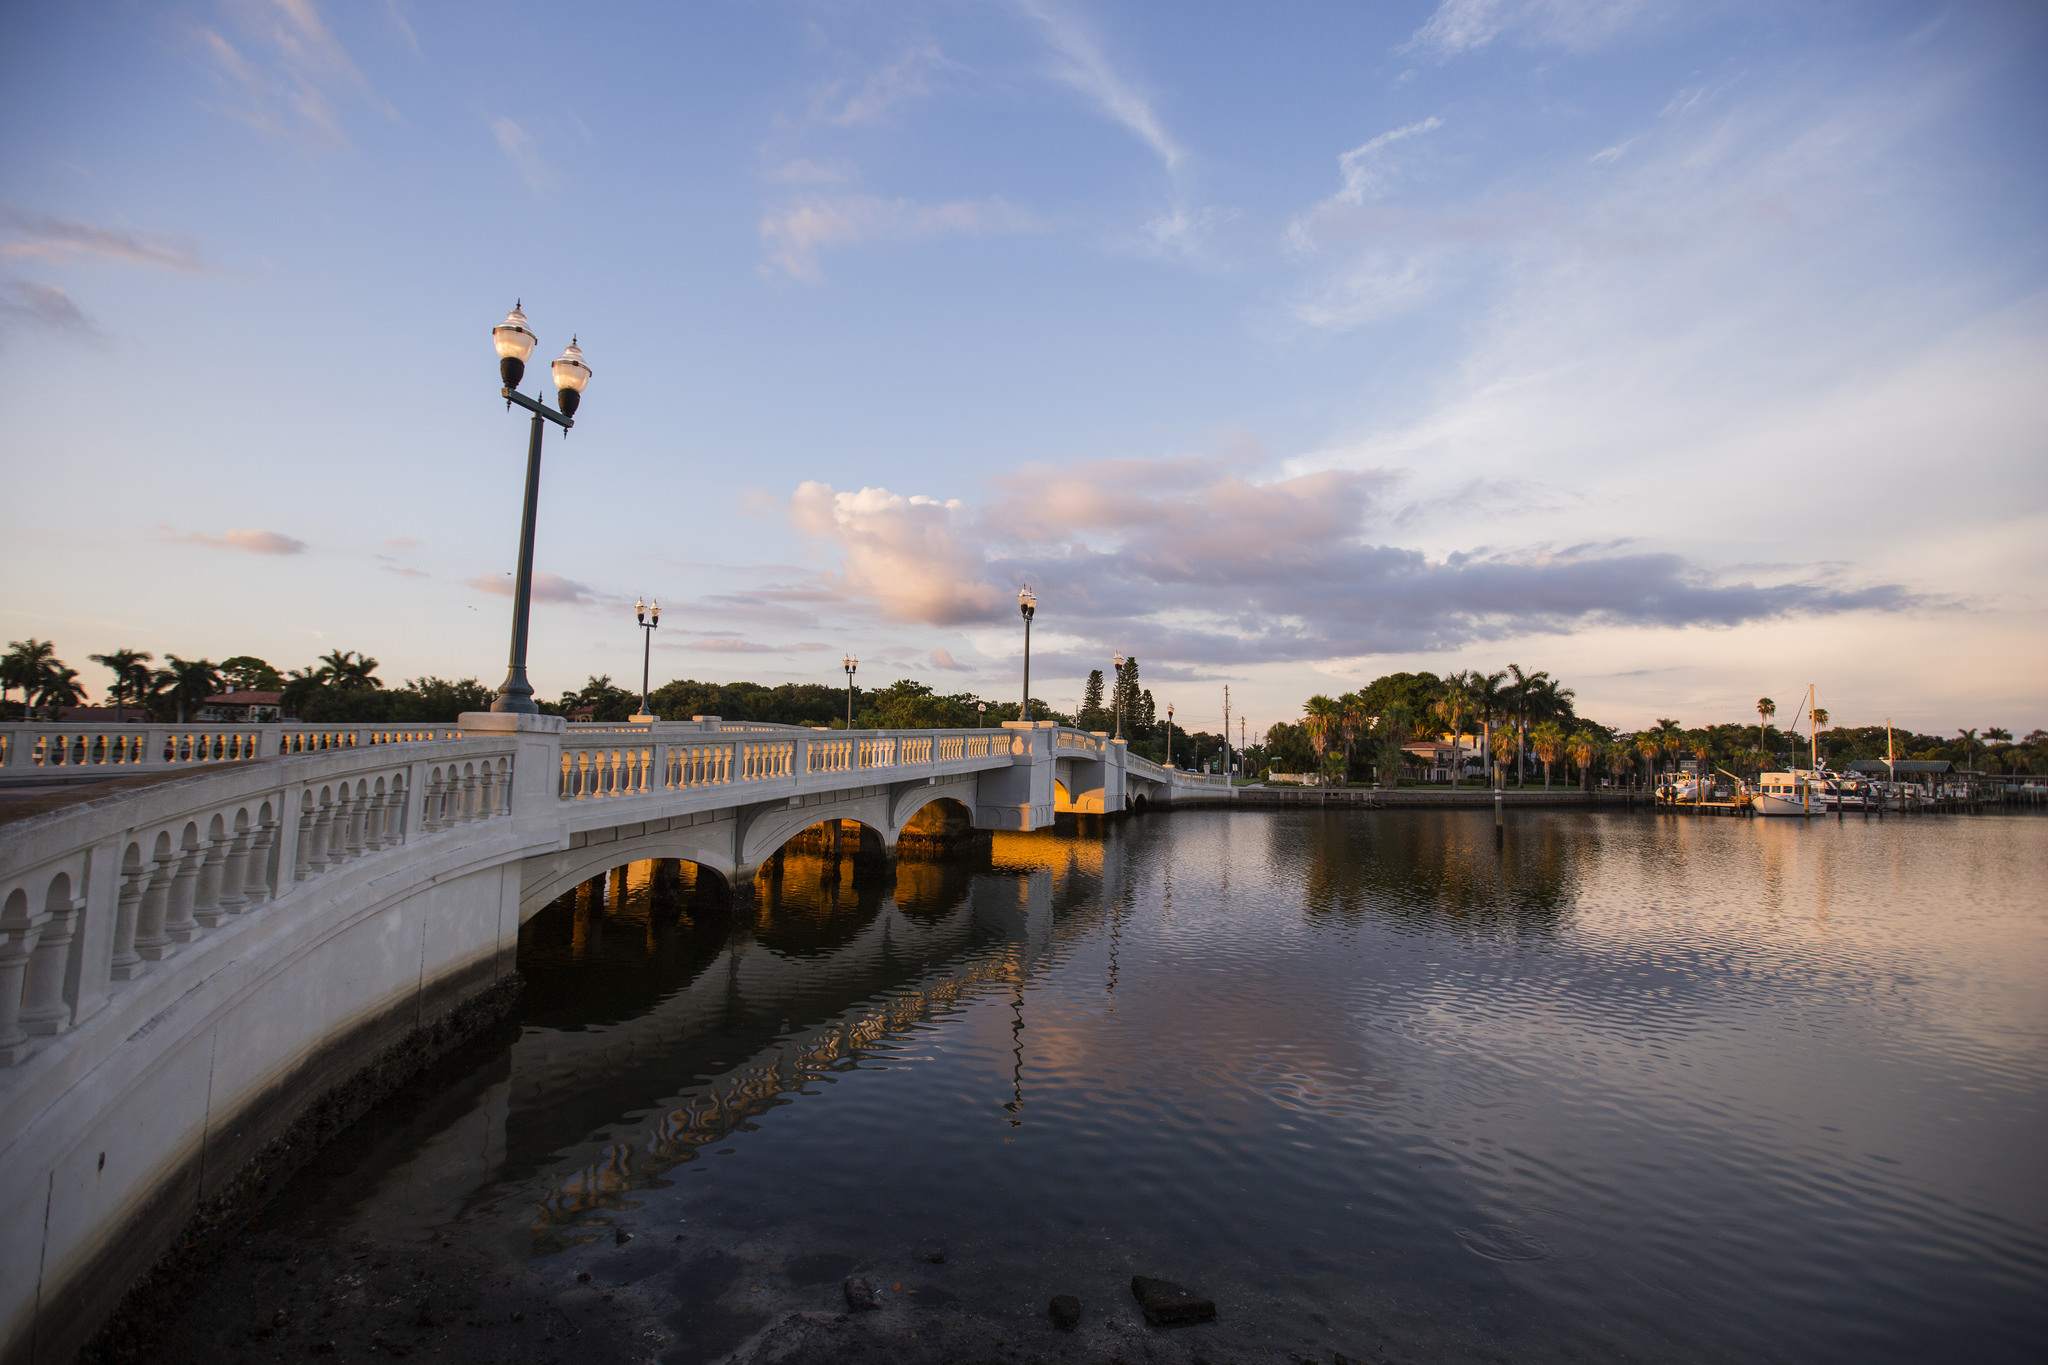 saint petersburg landmark16 Landmarks of Saint Petersburg, Florida